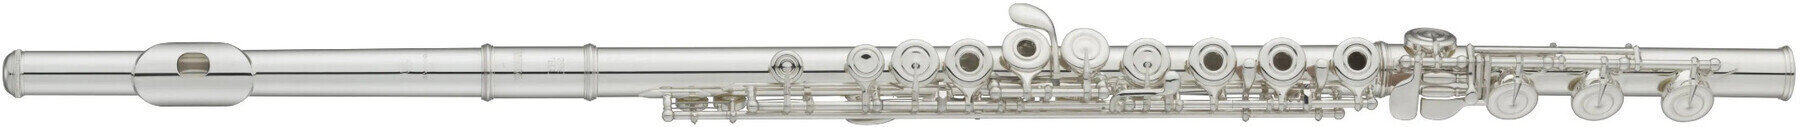 Concert flute Avanti 2000CIF Concert flute